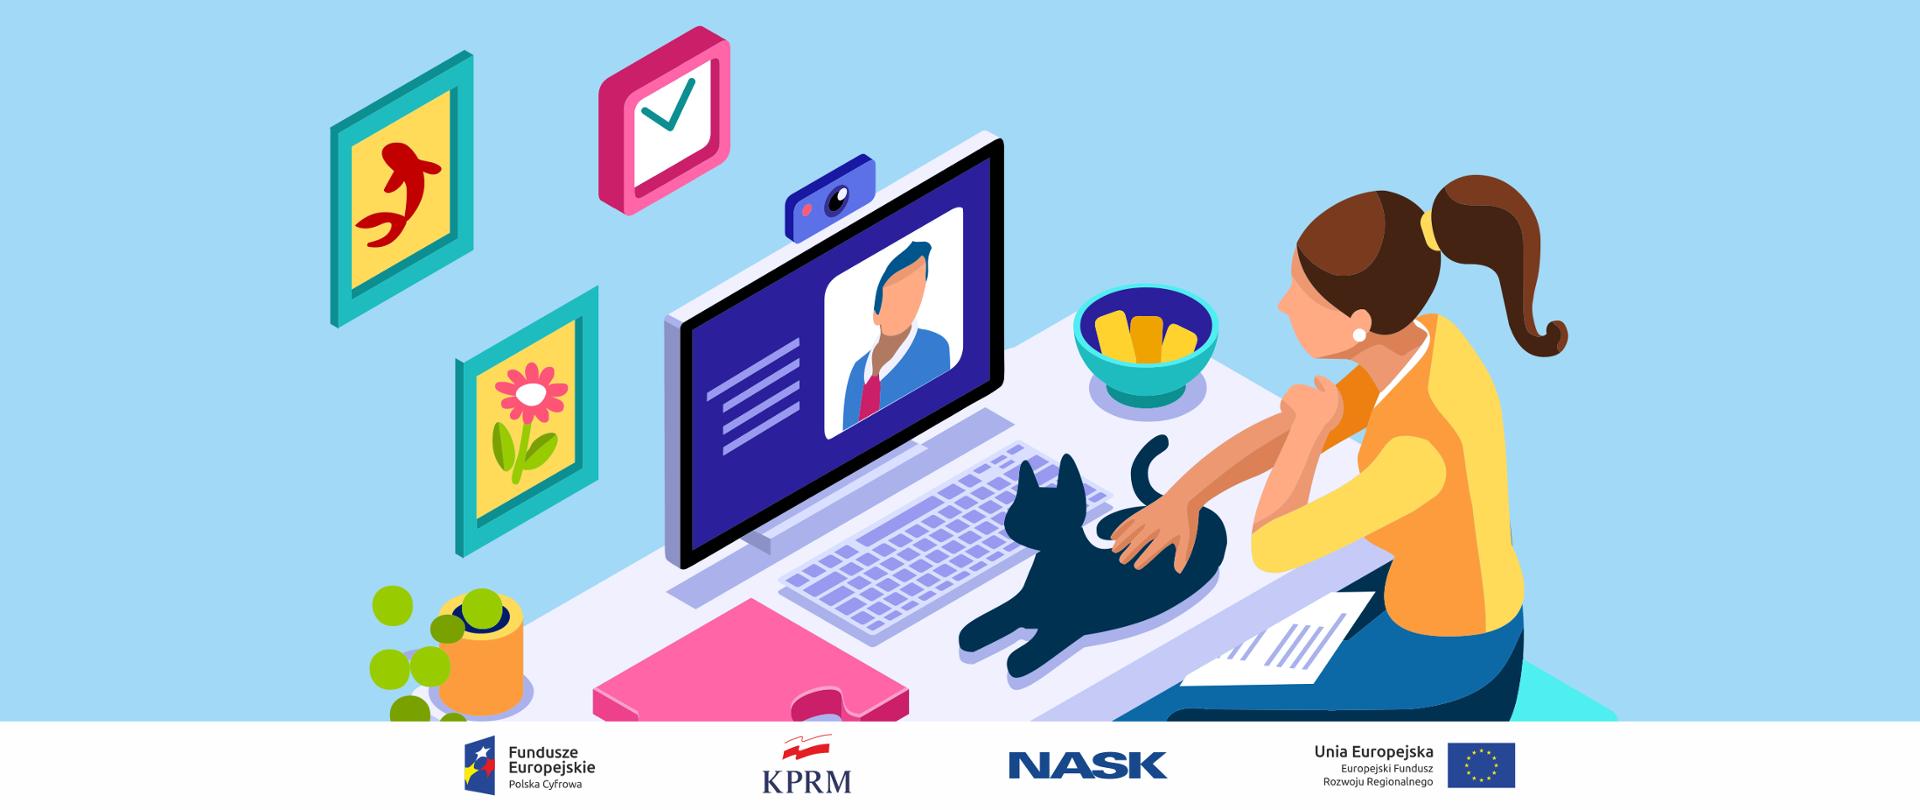 Grafika wektorowa - kobieta siedzi przed komputerem, bierze udział w wideokonferencji. Głaszcze kota leżącego na biurku, przed klawiaturą komputera. Na ścianie przed nią wiszą kolorowe obrazki.